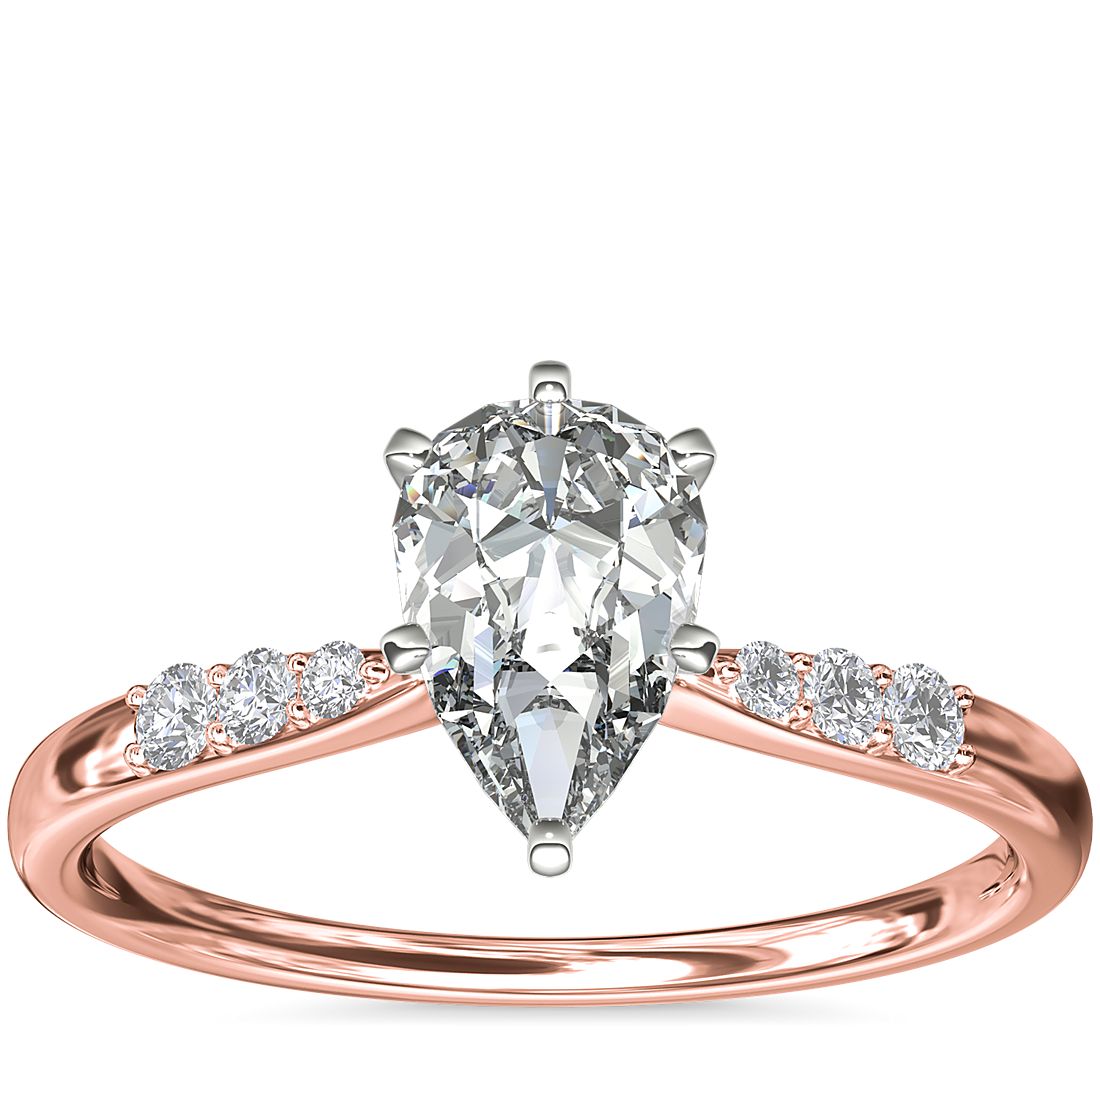 Anillo de compromiso de oro rosado con un diamante en forma de pera de 1 quilate.